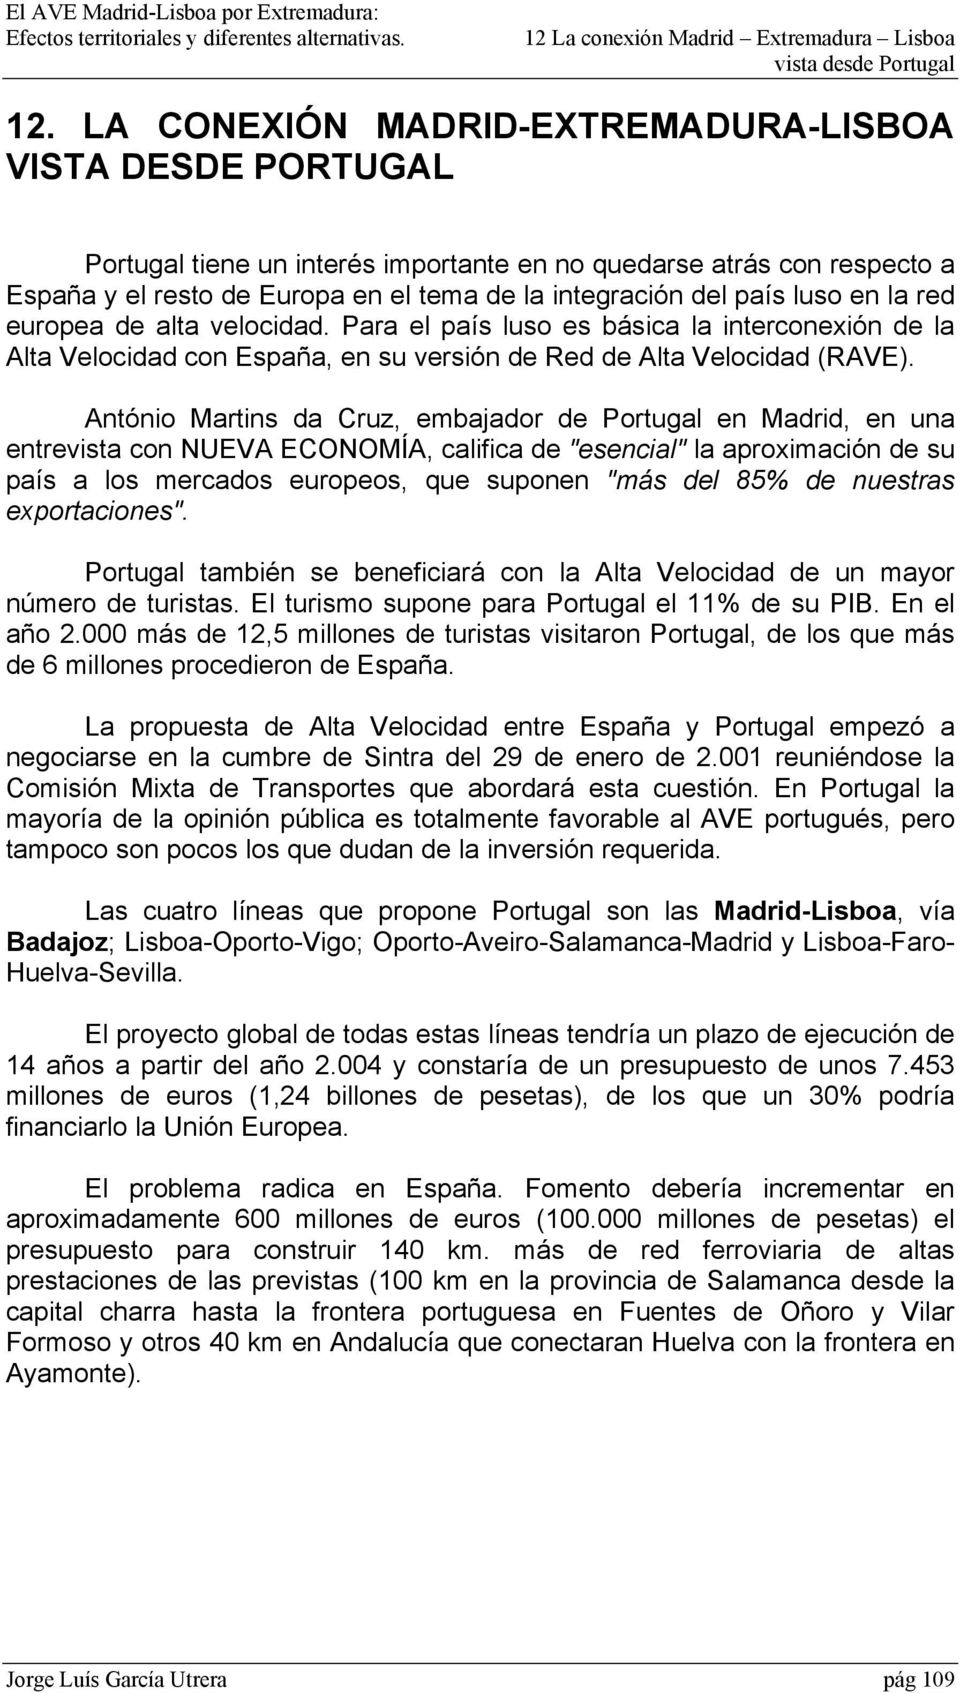 António Martins da Cruz, embajador de Portugal en Madrid, en una entrevista con NUEVA ECONOMÍA, califica de "esencial" la aproximación de su país a los mercados europeos, que suponen "más del 85% de